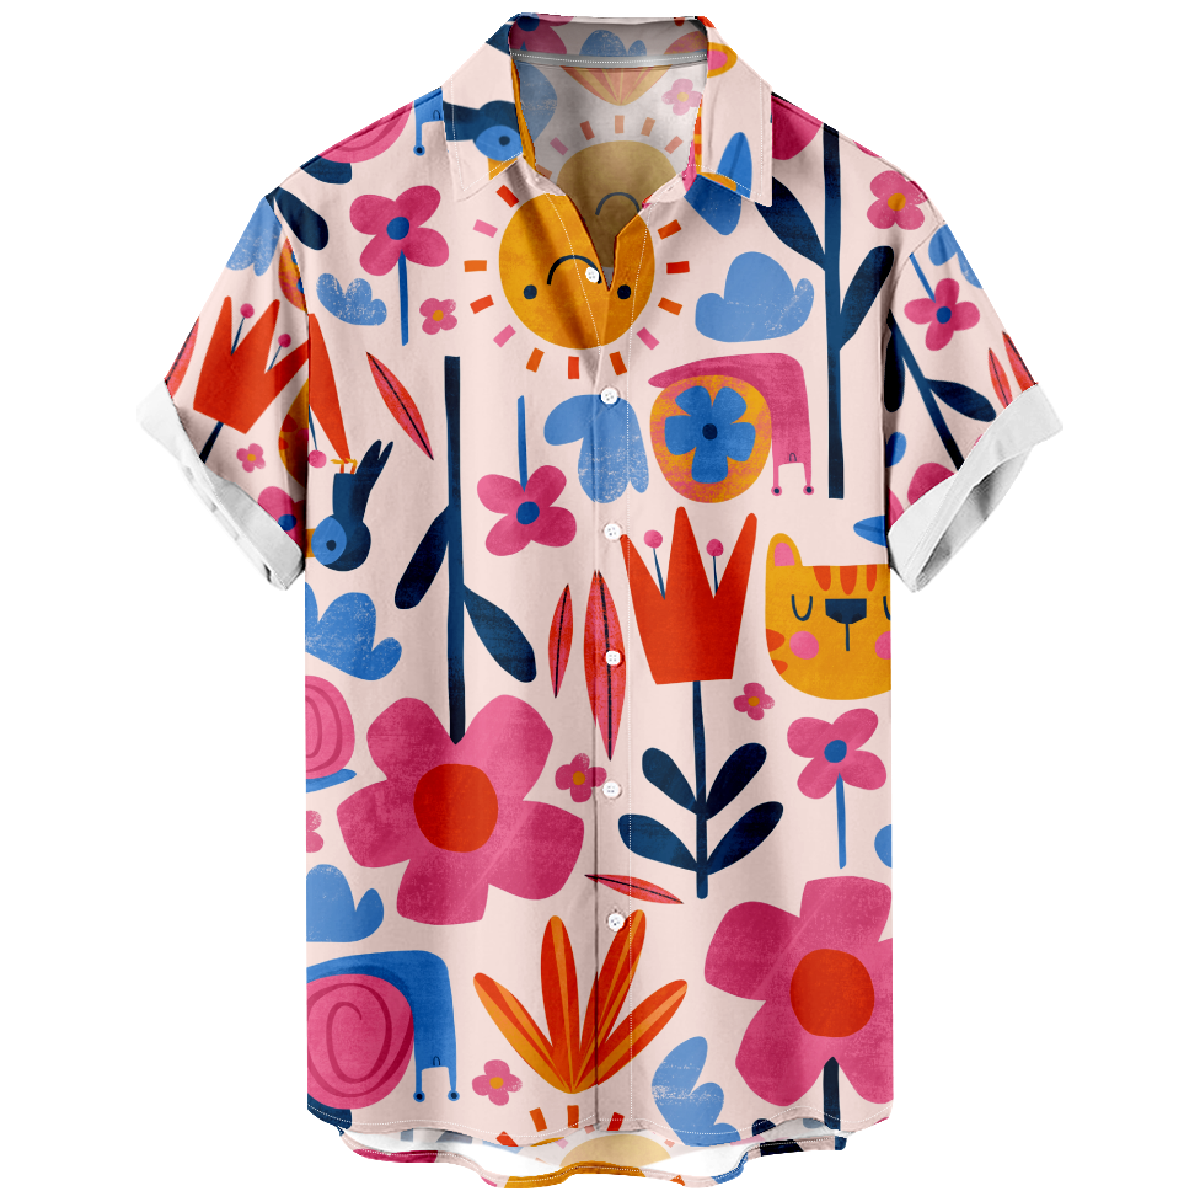 Men's Pink Flower Print Short Sleeve Shirt Floral Button Up Shirt